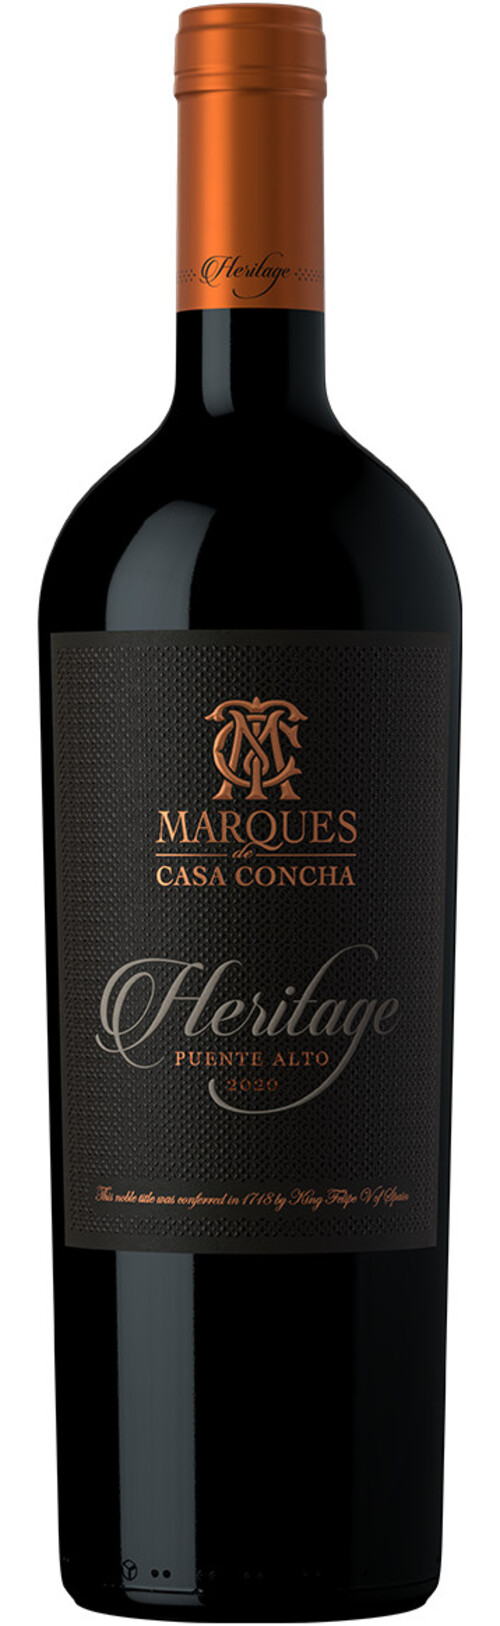 Rượu vang đỏ Chile Marques de Casa Concha Heritage Cabernet Sauvignon